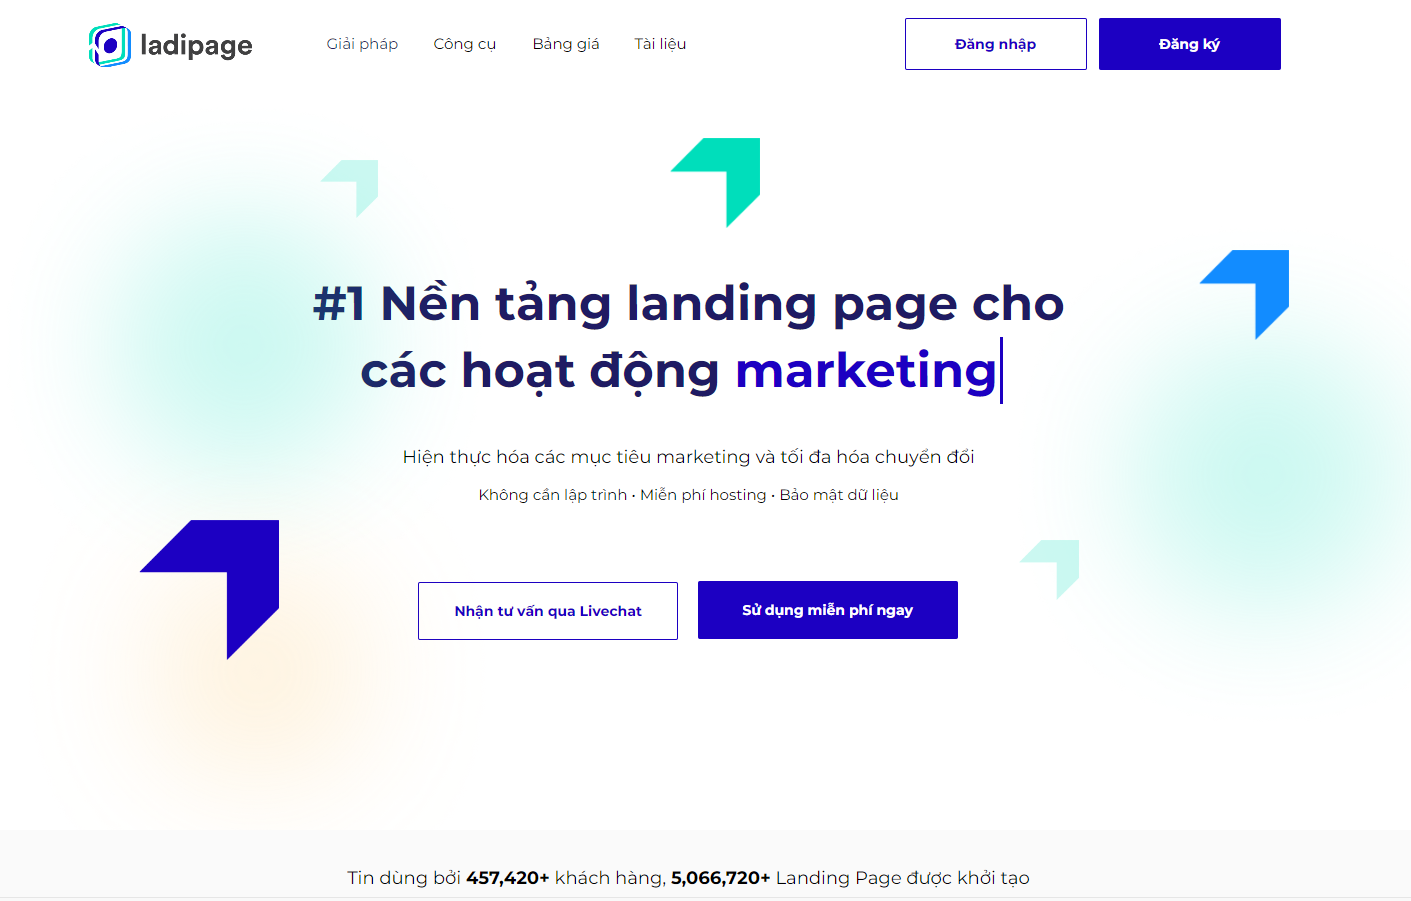 LaDiPage – Nền tảng Landing Page cho hoạt động marketing và quảng cáo